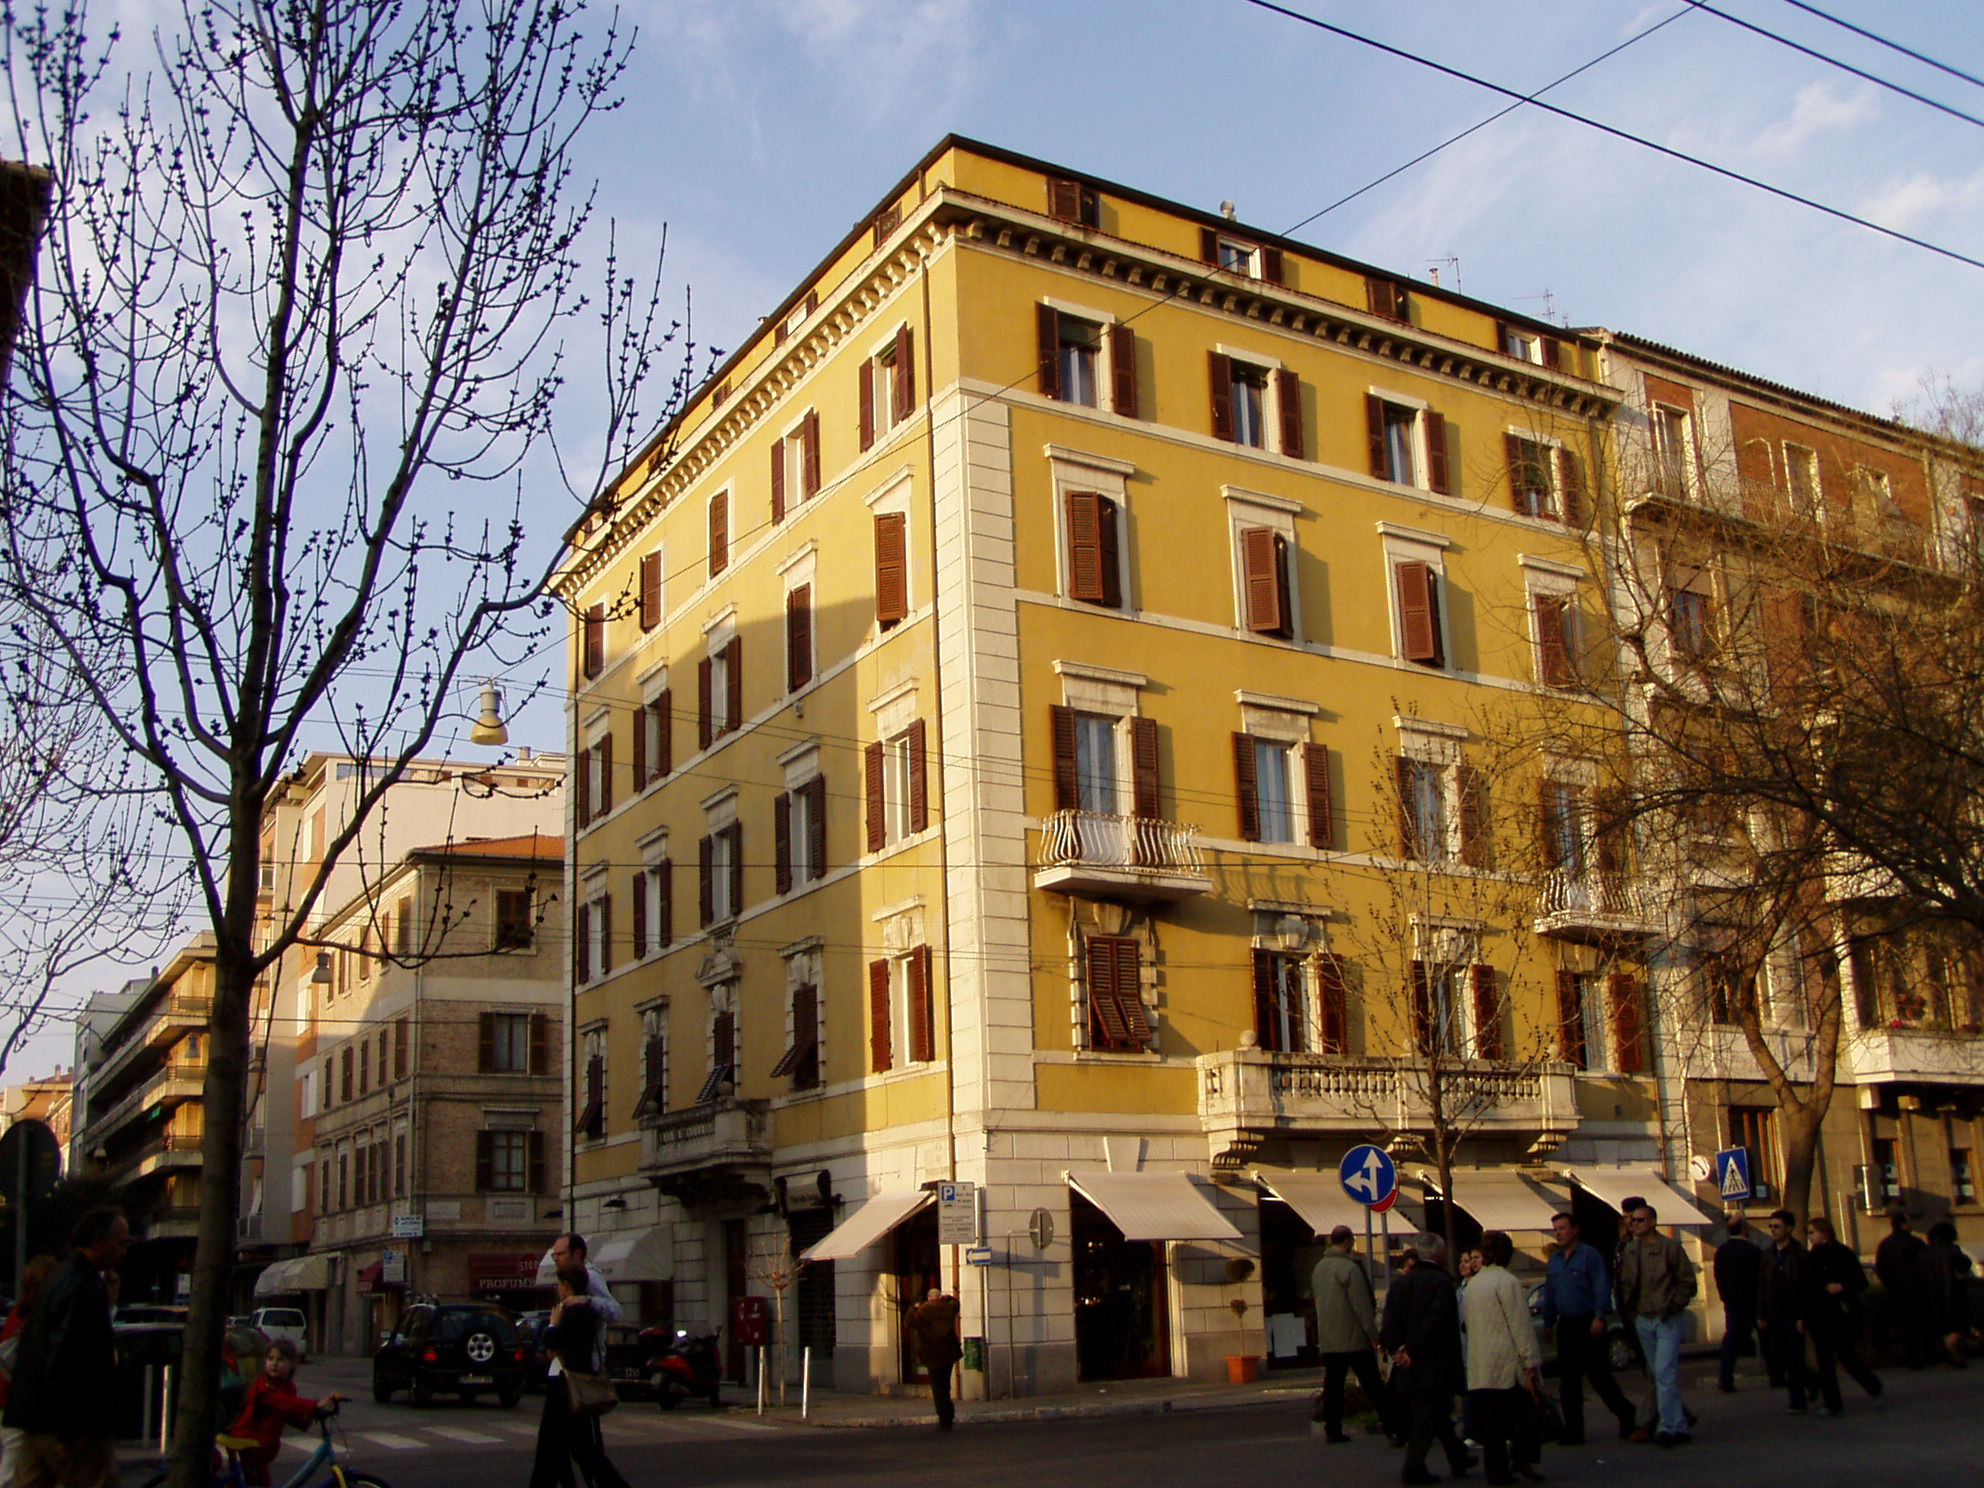 Palazzo in stile neoclassico (palazzo) - Ancona (AN) 